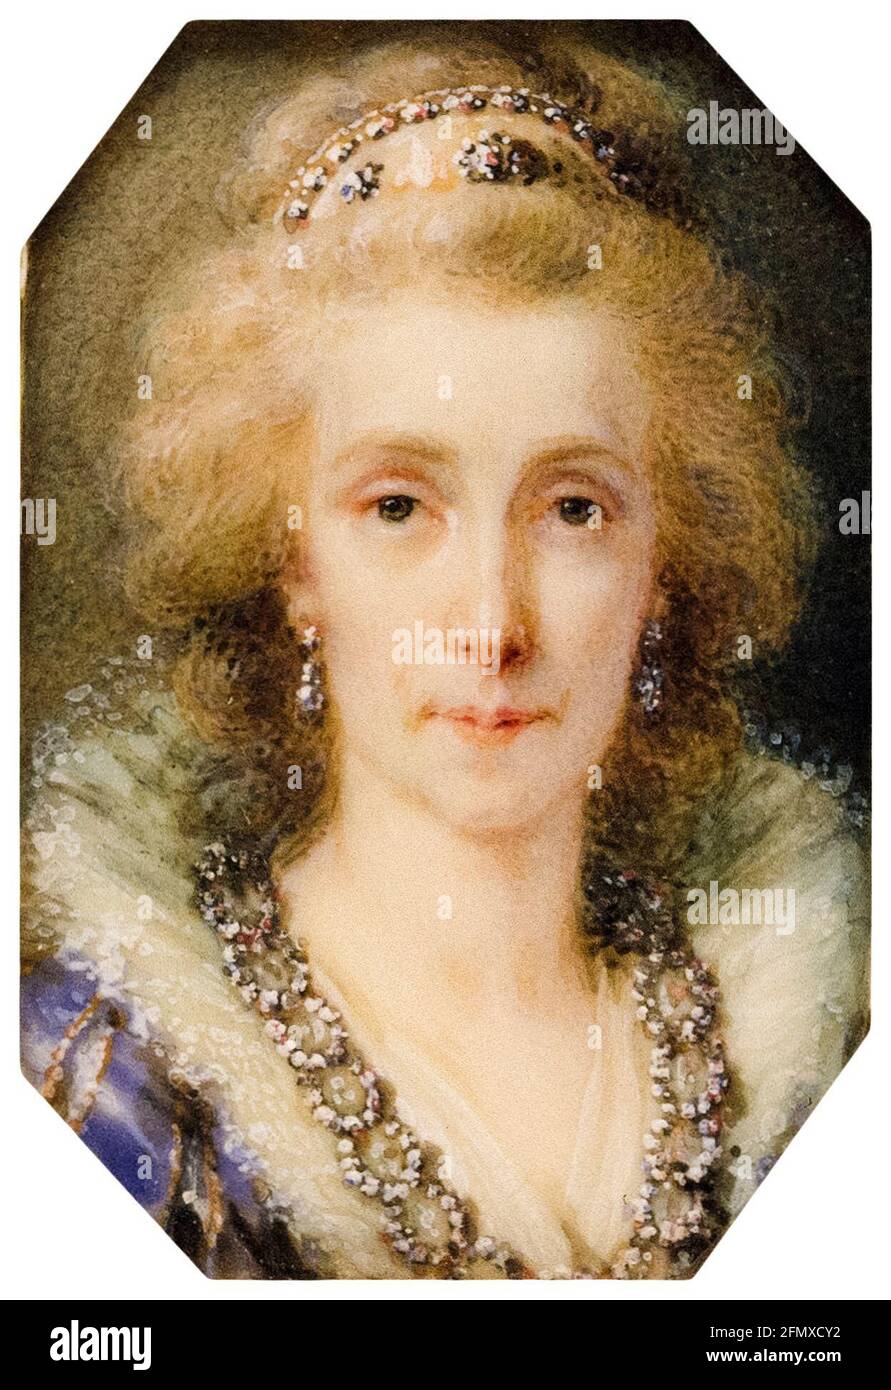 Infanta Maria Luisa, de l'Espagne (1745-1792), impératrice romaine Sainte, consort d'archiduchesse d'Autriche (1790-1792), épouse du Saint empereur romain Léopold II, portrait miniature par Heinrich Friedrich Füger, vers 1790 Banque D'Images